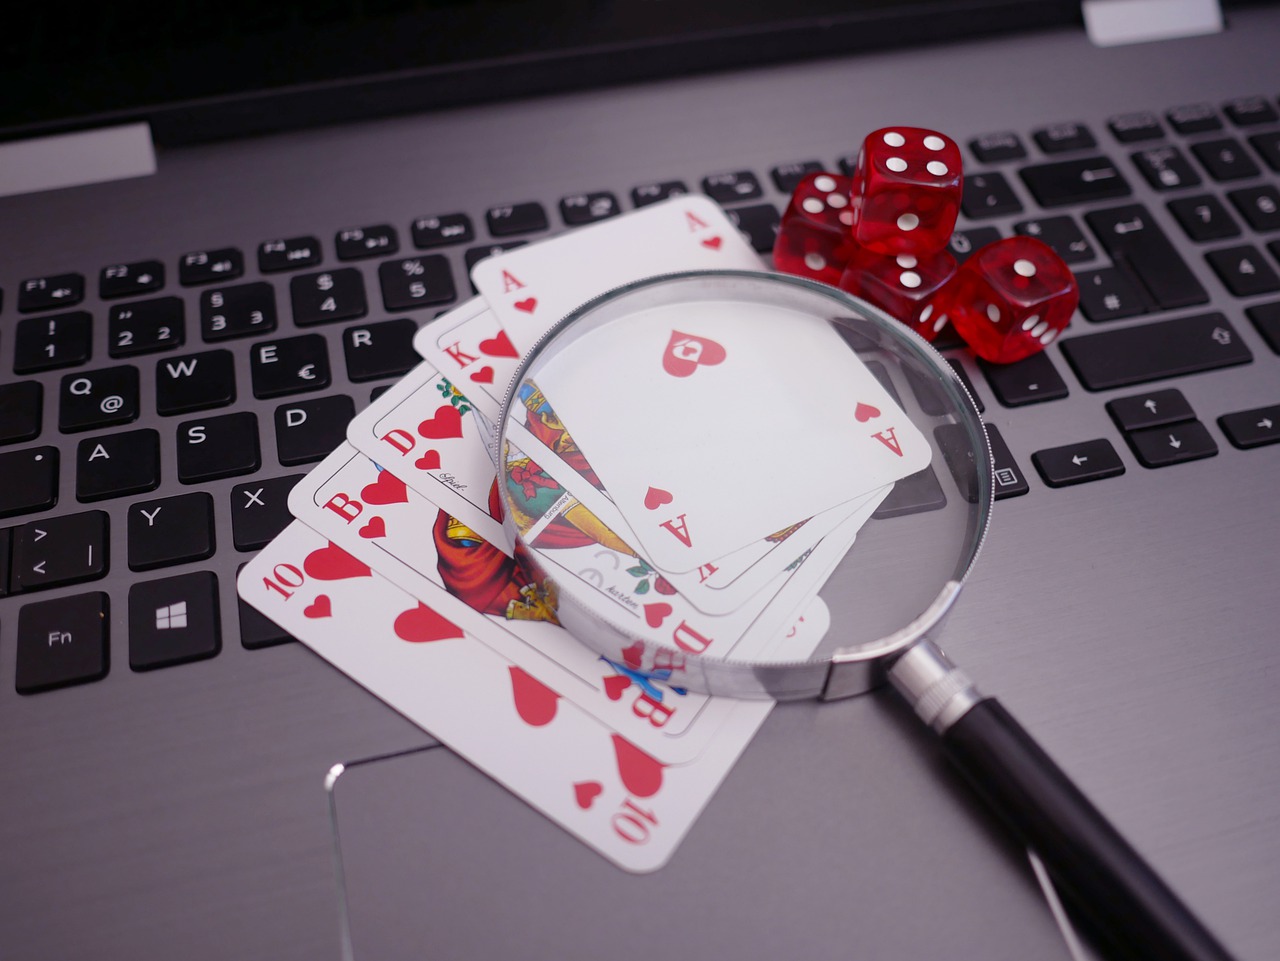 Cómo cuidar tus finanzas si decides jugar en un casino en línea